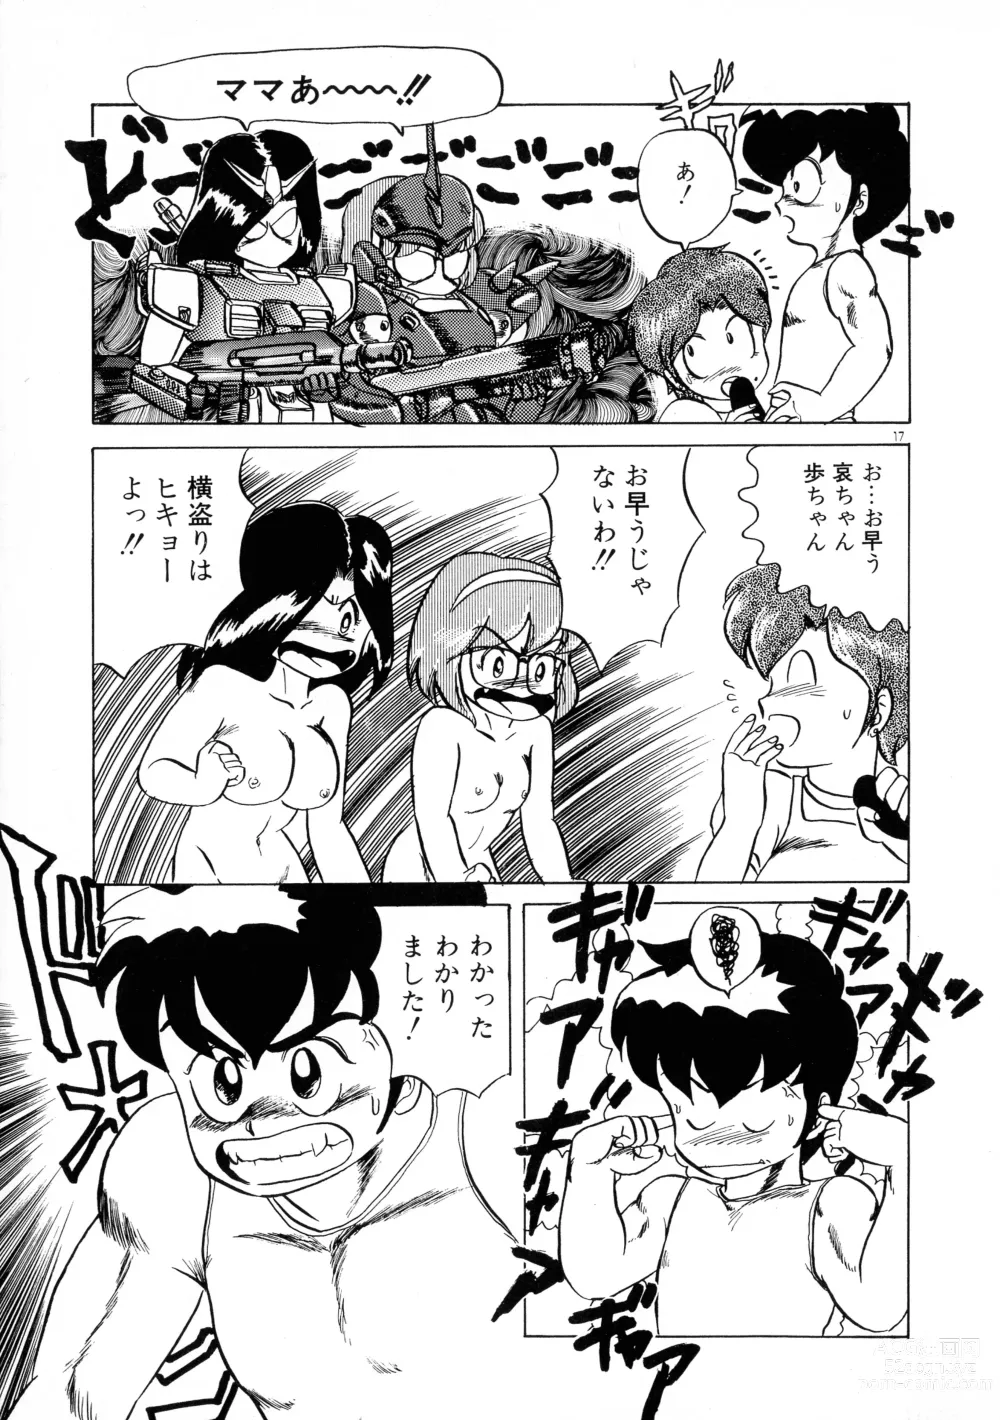 Page 17 of manga Akai Miwaku